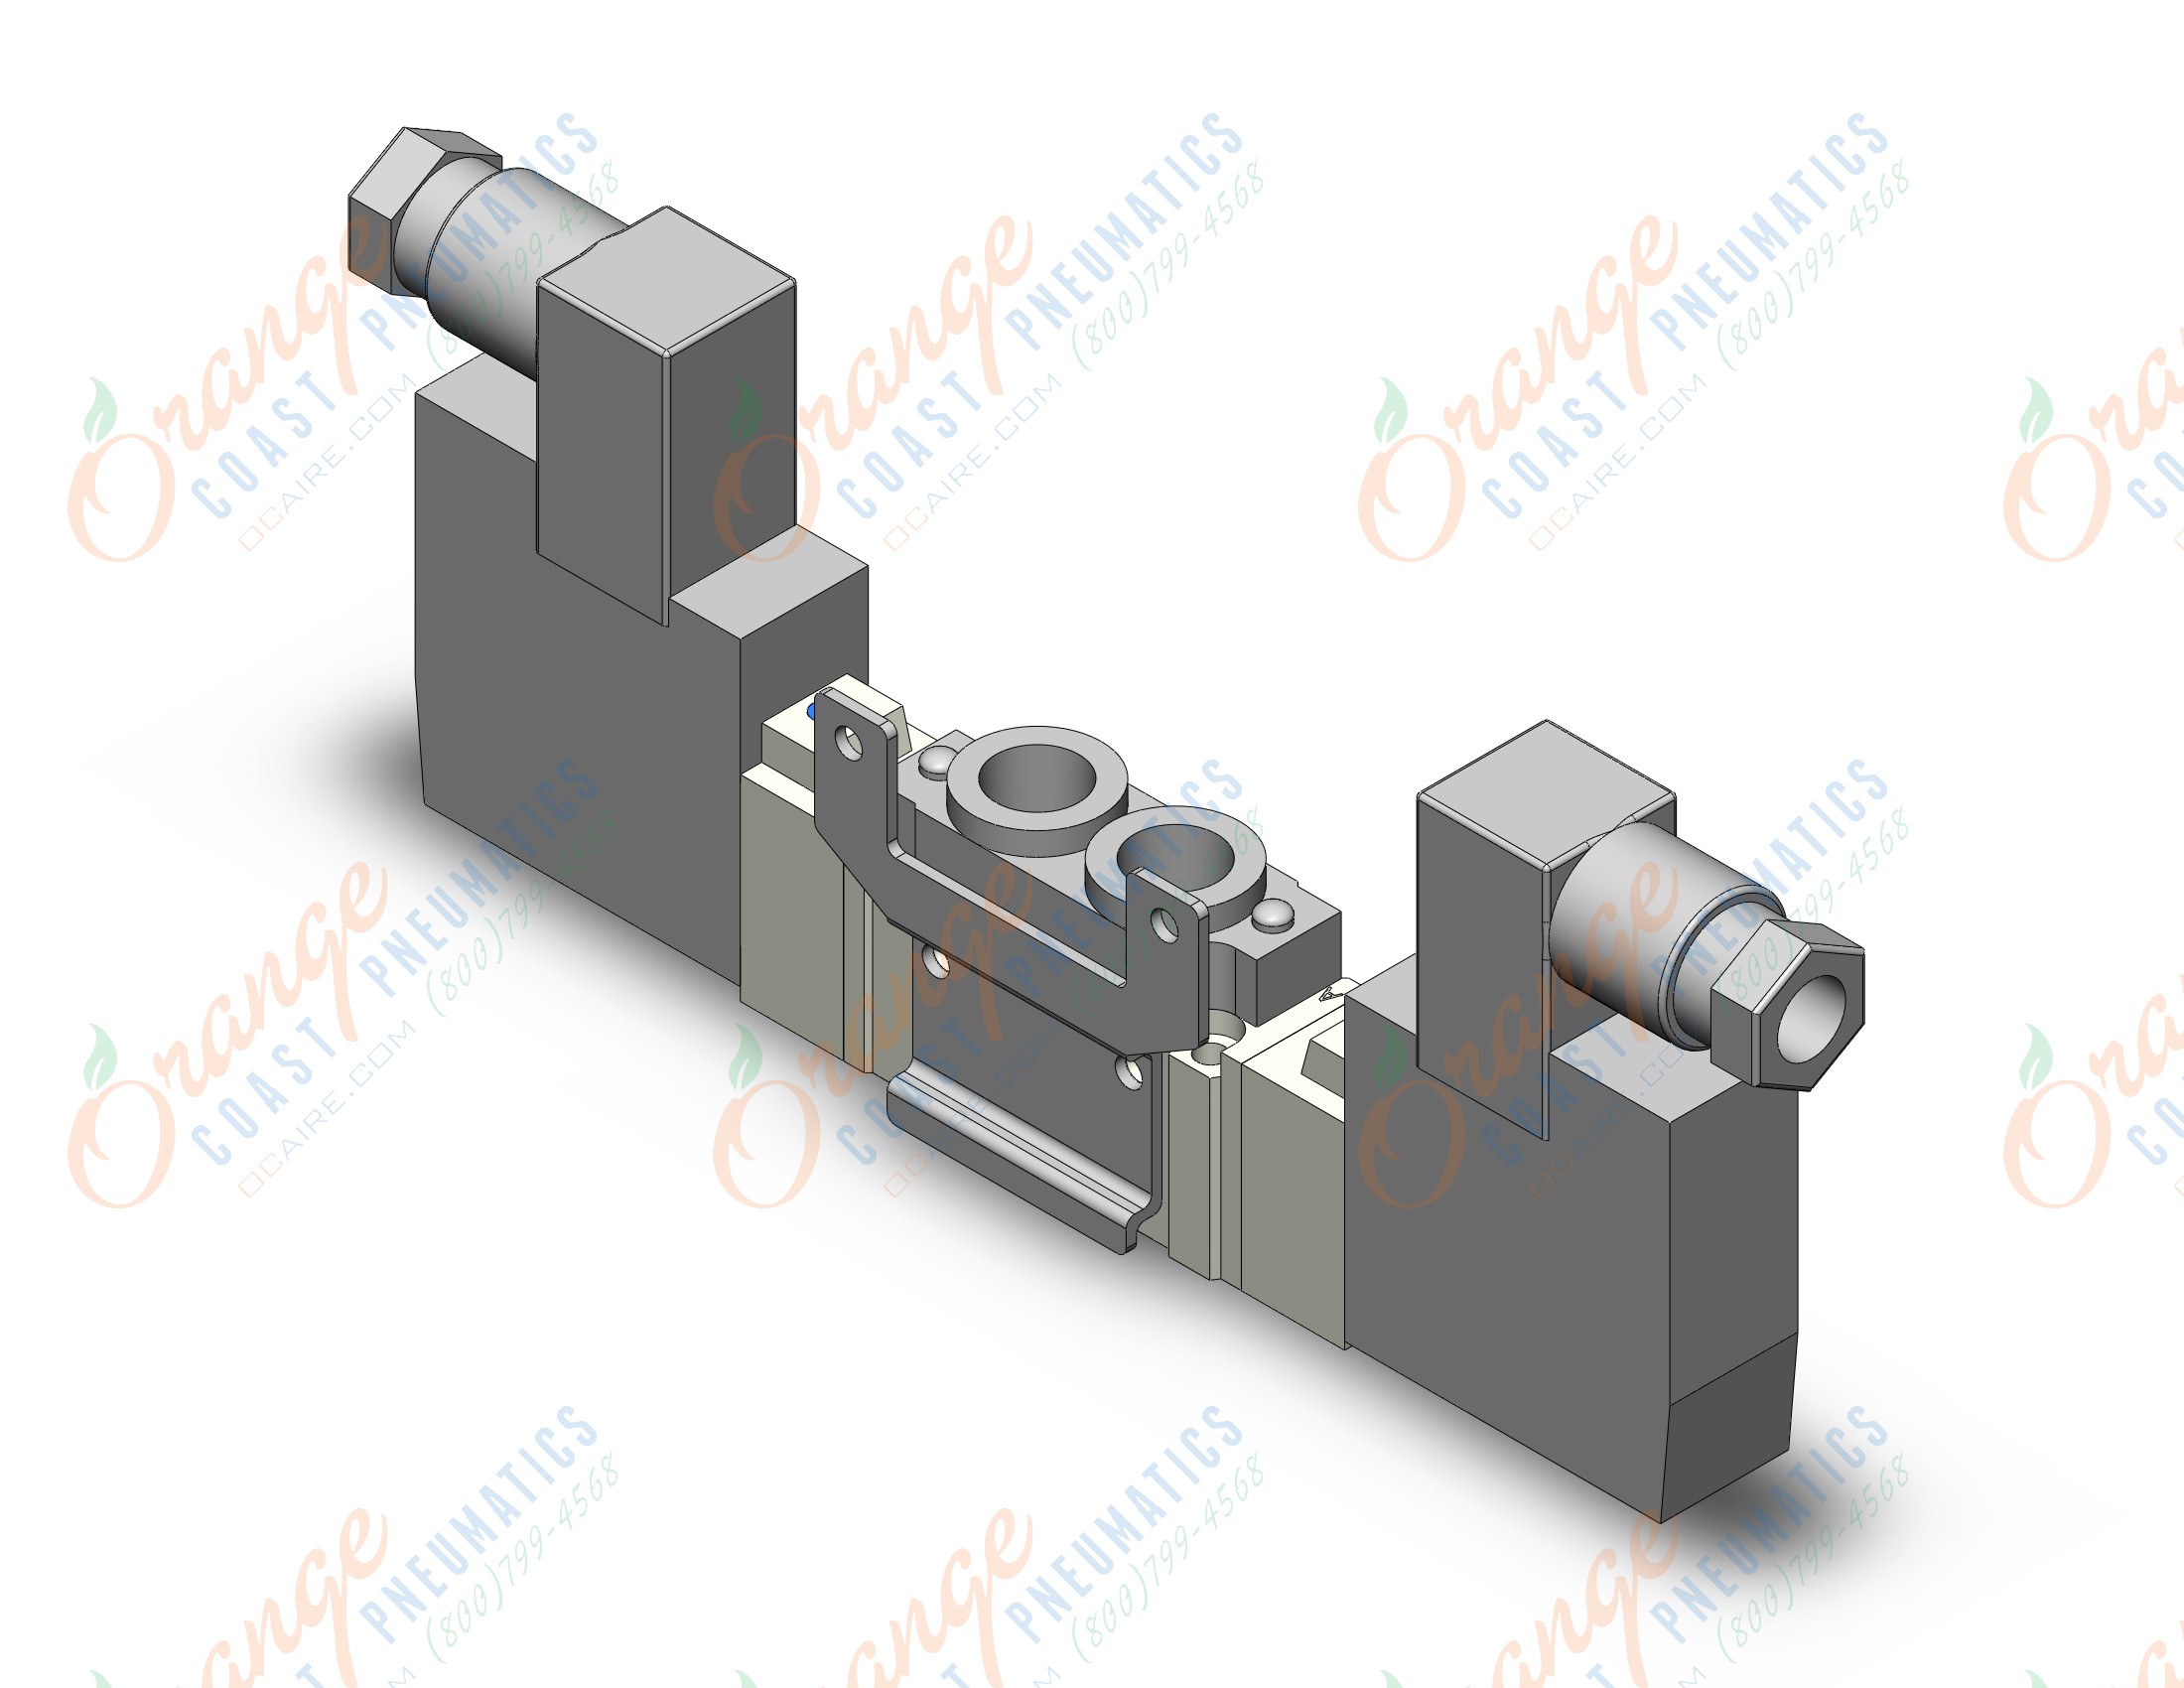 SMC SY5220-5DZ-01-F2 valve